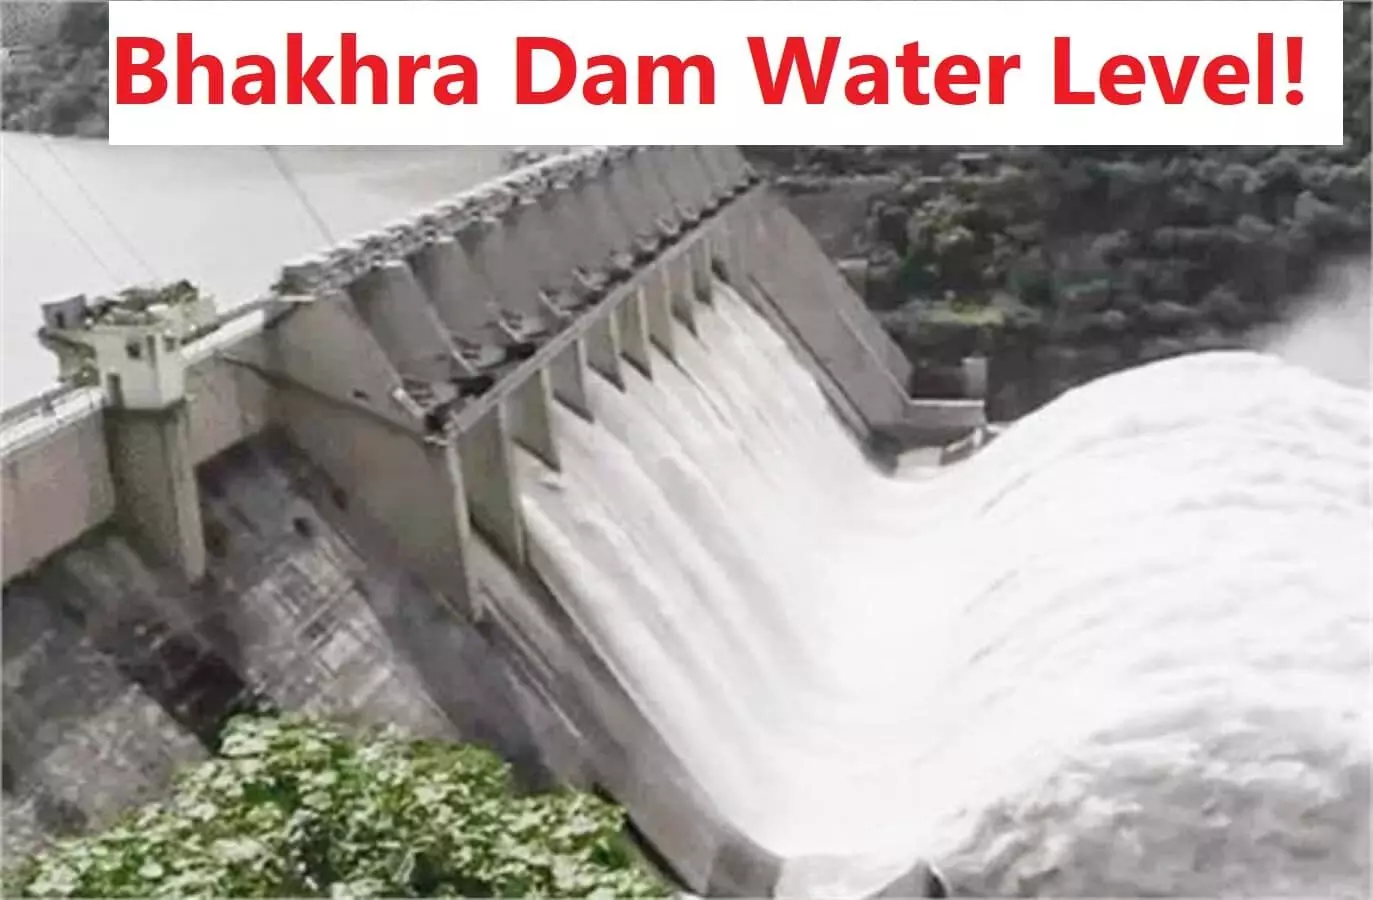 Bhakra Dam Water Level: पंजाब में फिर खतरे की घंटी, डेंजर लेवल के करीब पहुंचा भाखड़ा डैम का पानी